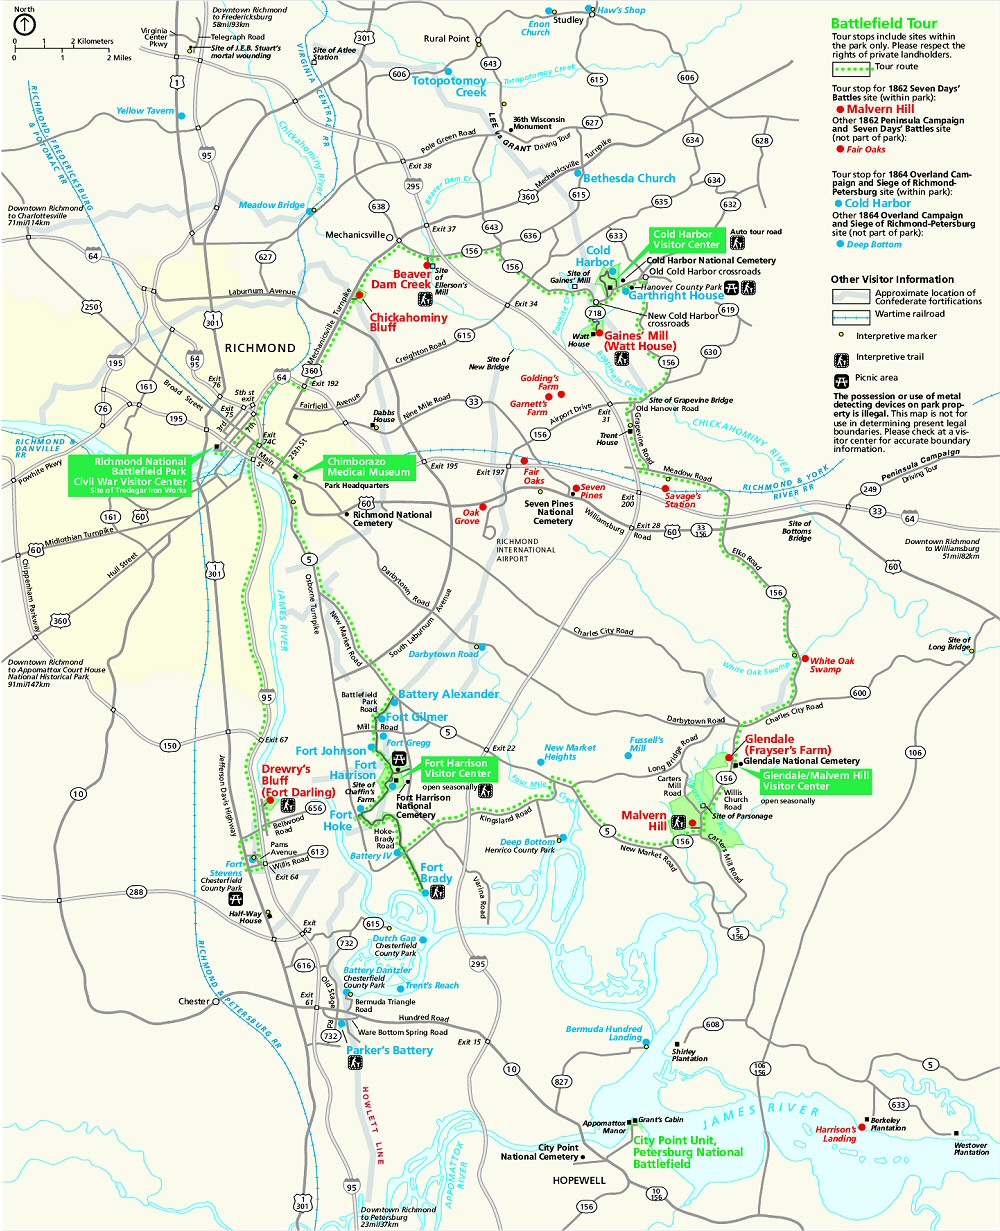 Greater Richmond Civil War Battlefields.jpg